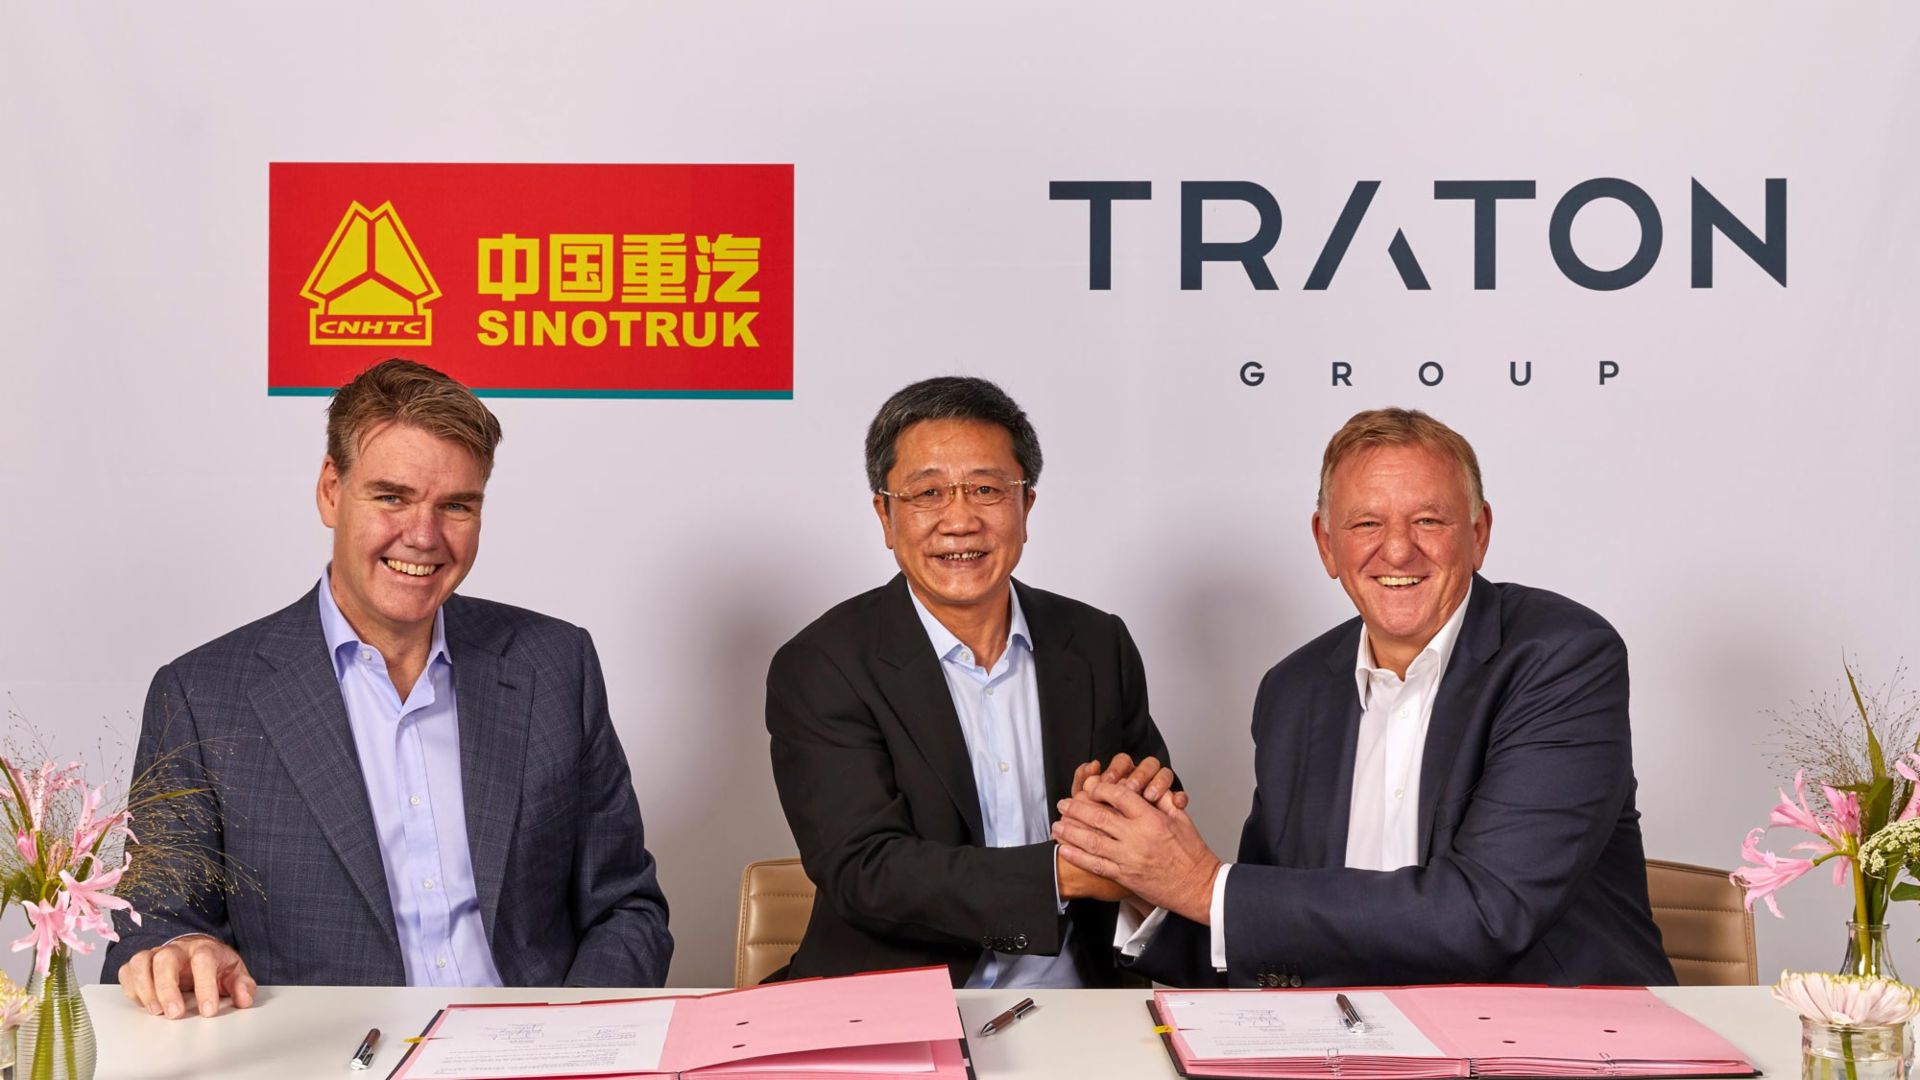 (Von links nach rechts) Joachim Drees, CEO MAN, Cai Dong, President Sinotruk und Andreas Renschler, CEO TRATON.
